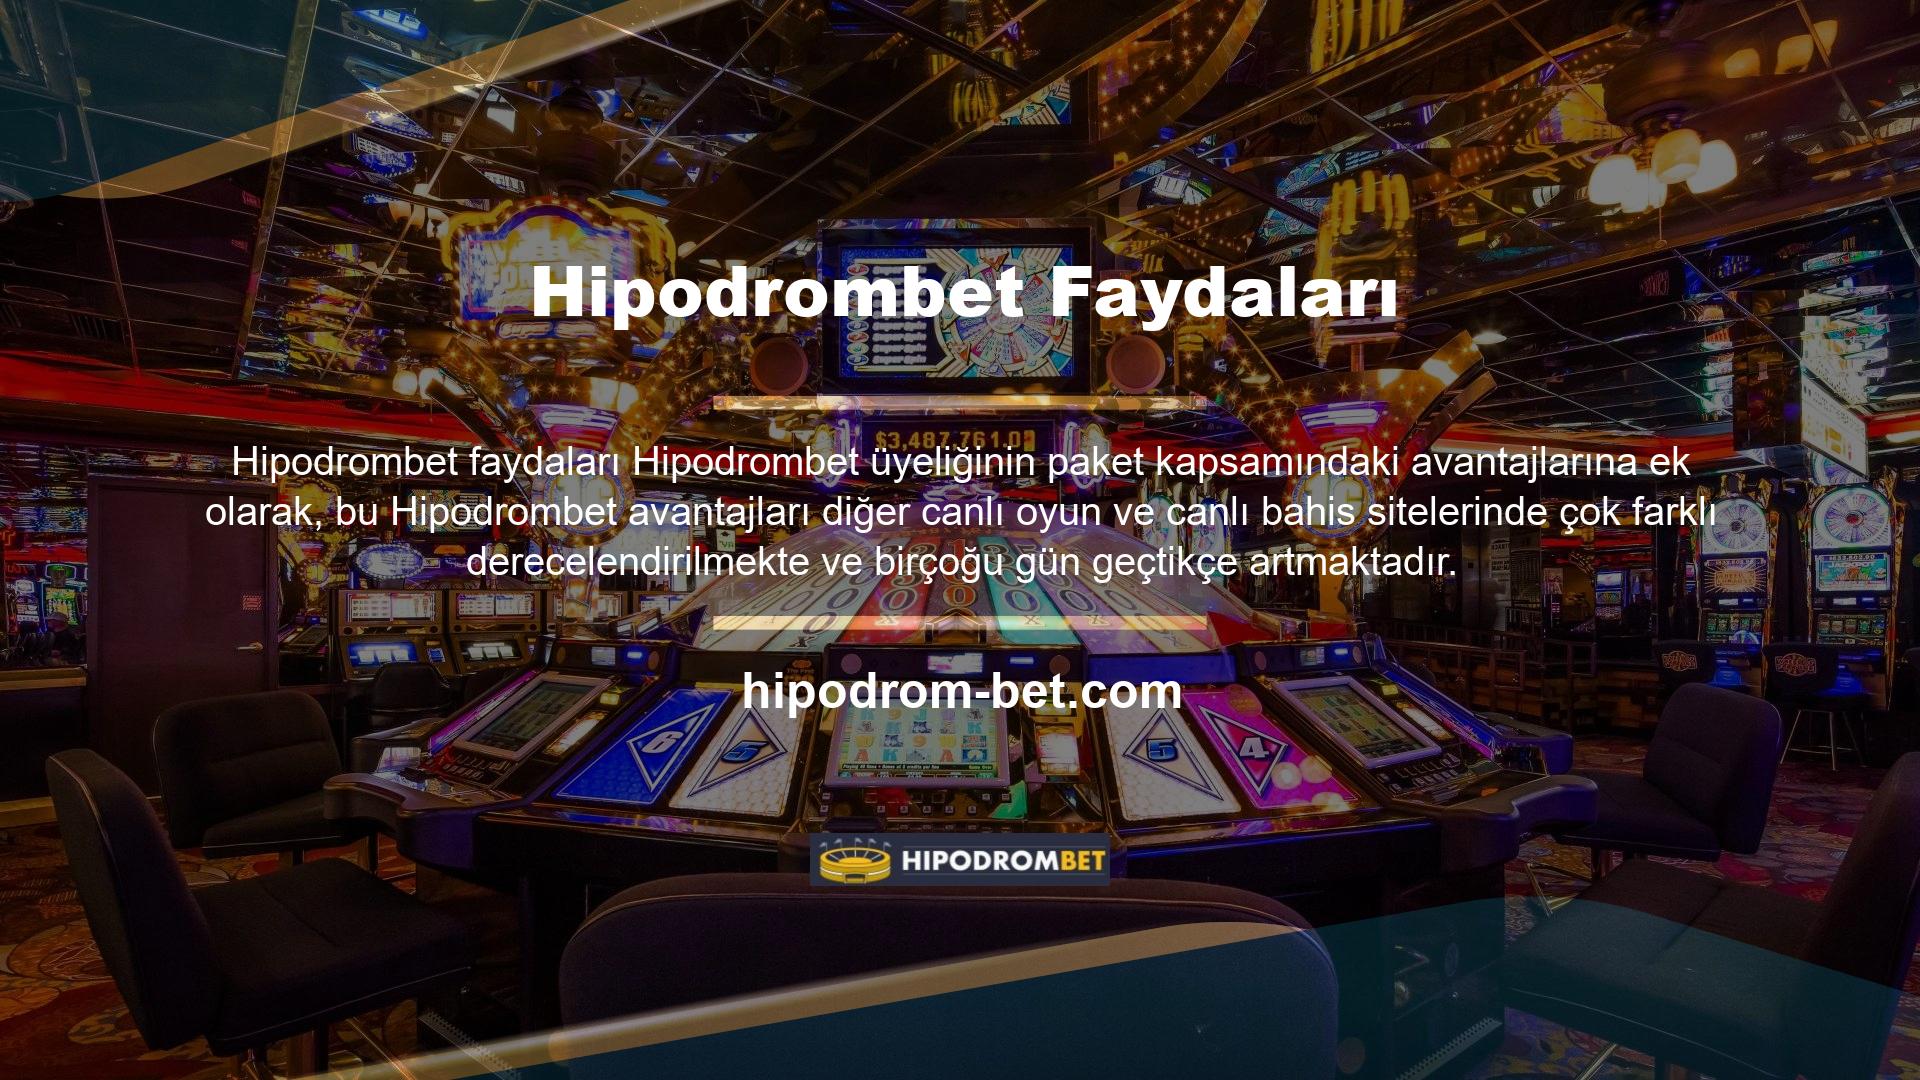 Hipodrombet mevcut girişi sadece kazançlar, canlı oyunlar, canlı poker ve canlı maç adreslerinden ibaret değil